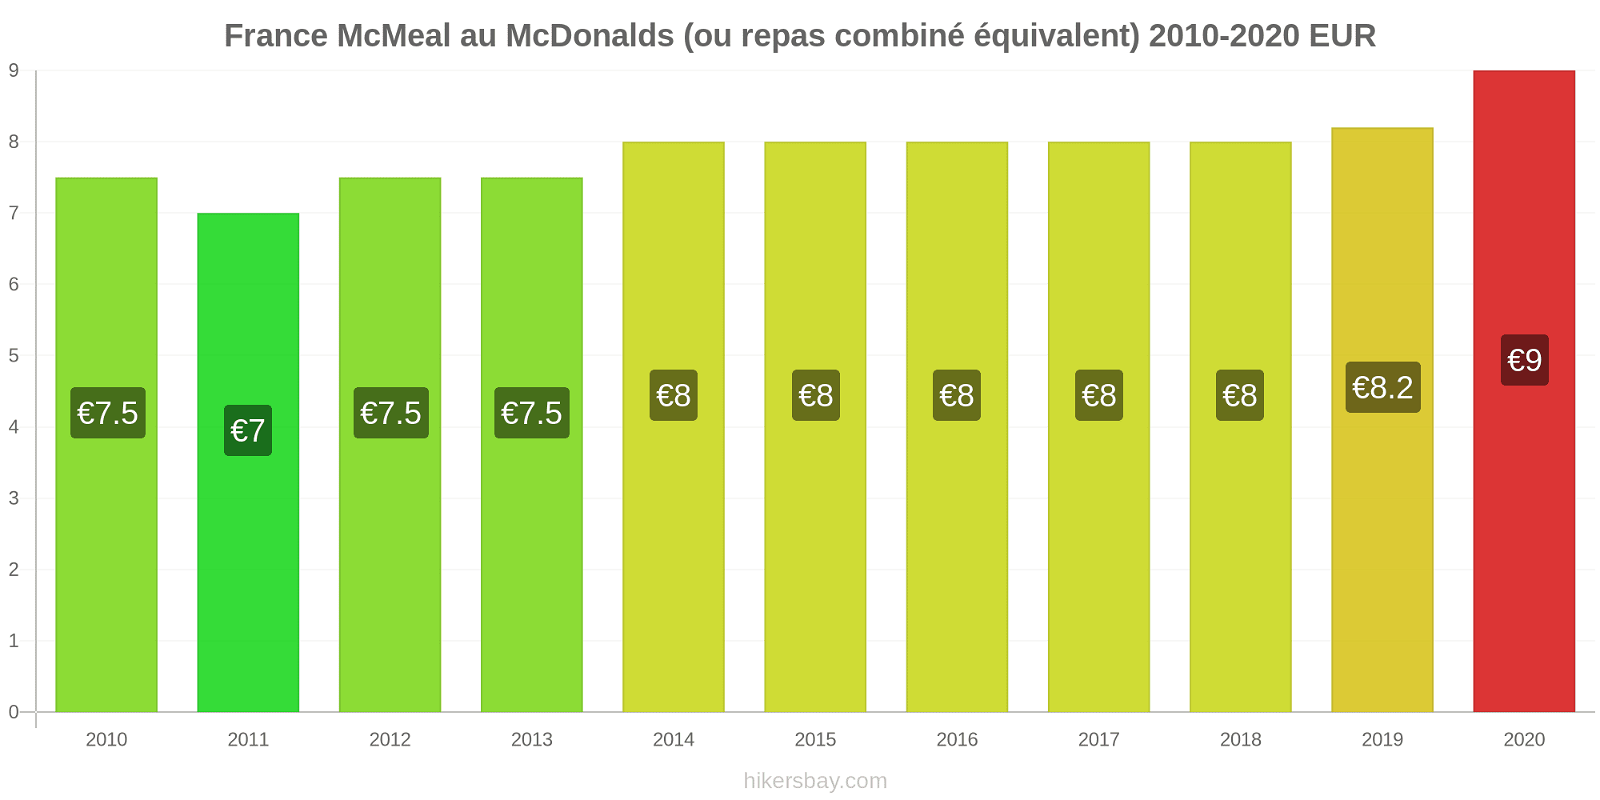 France changements de prix McMeal à McDonald ' s (ou Combo équivalent tourteau) hikersbay.com